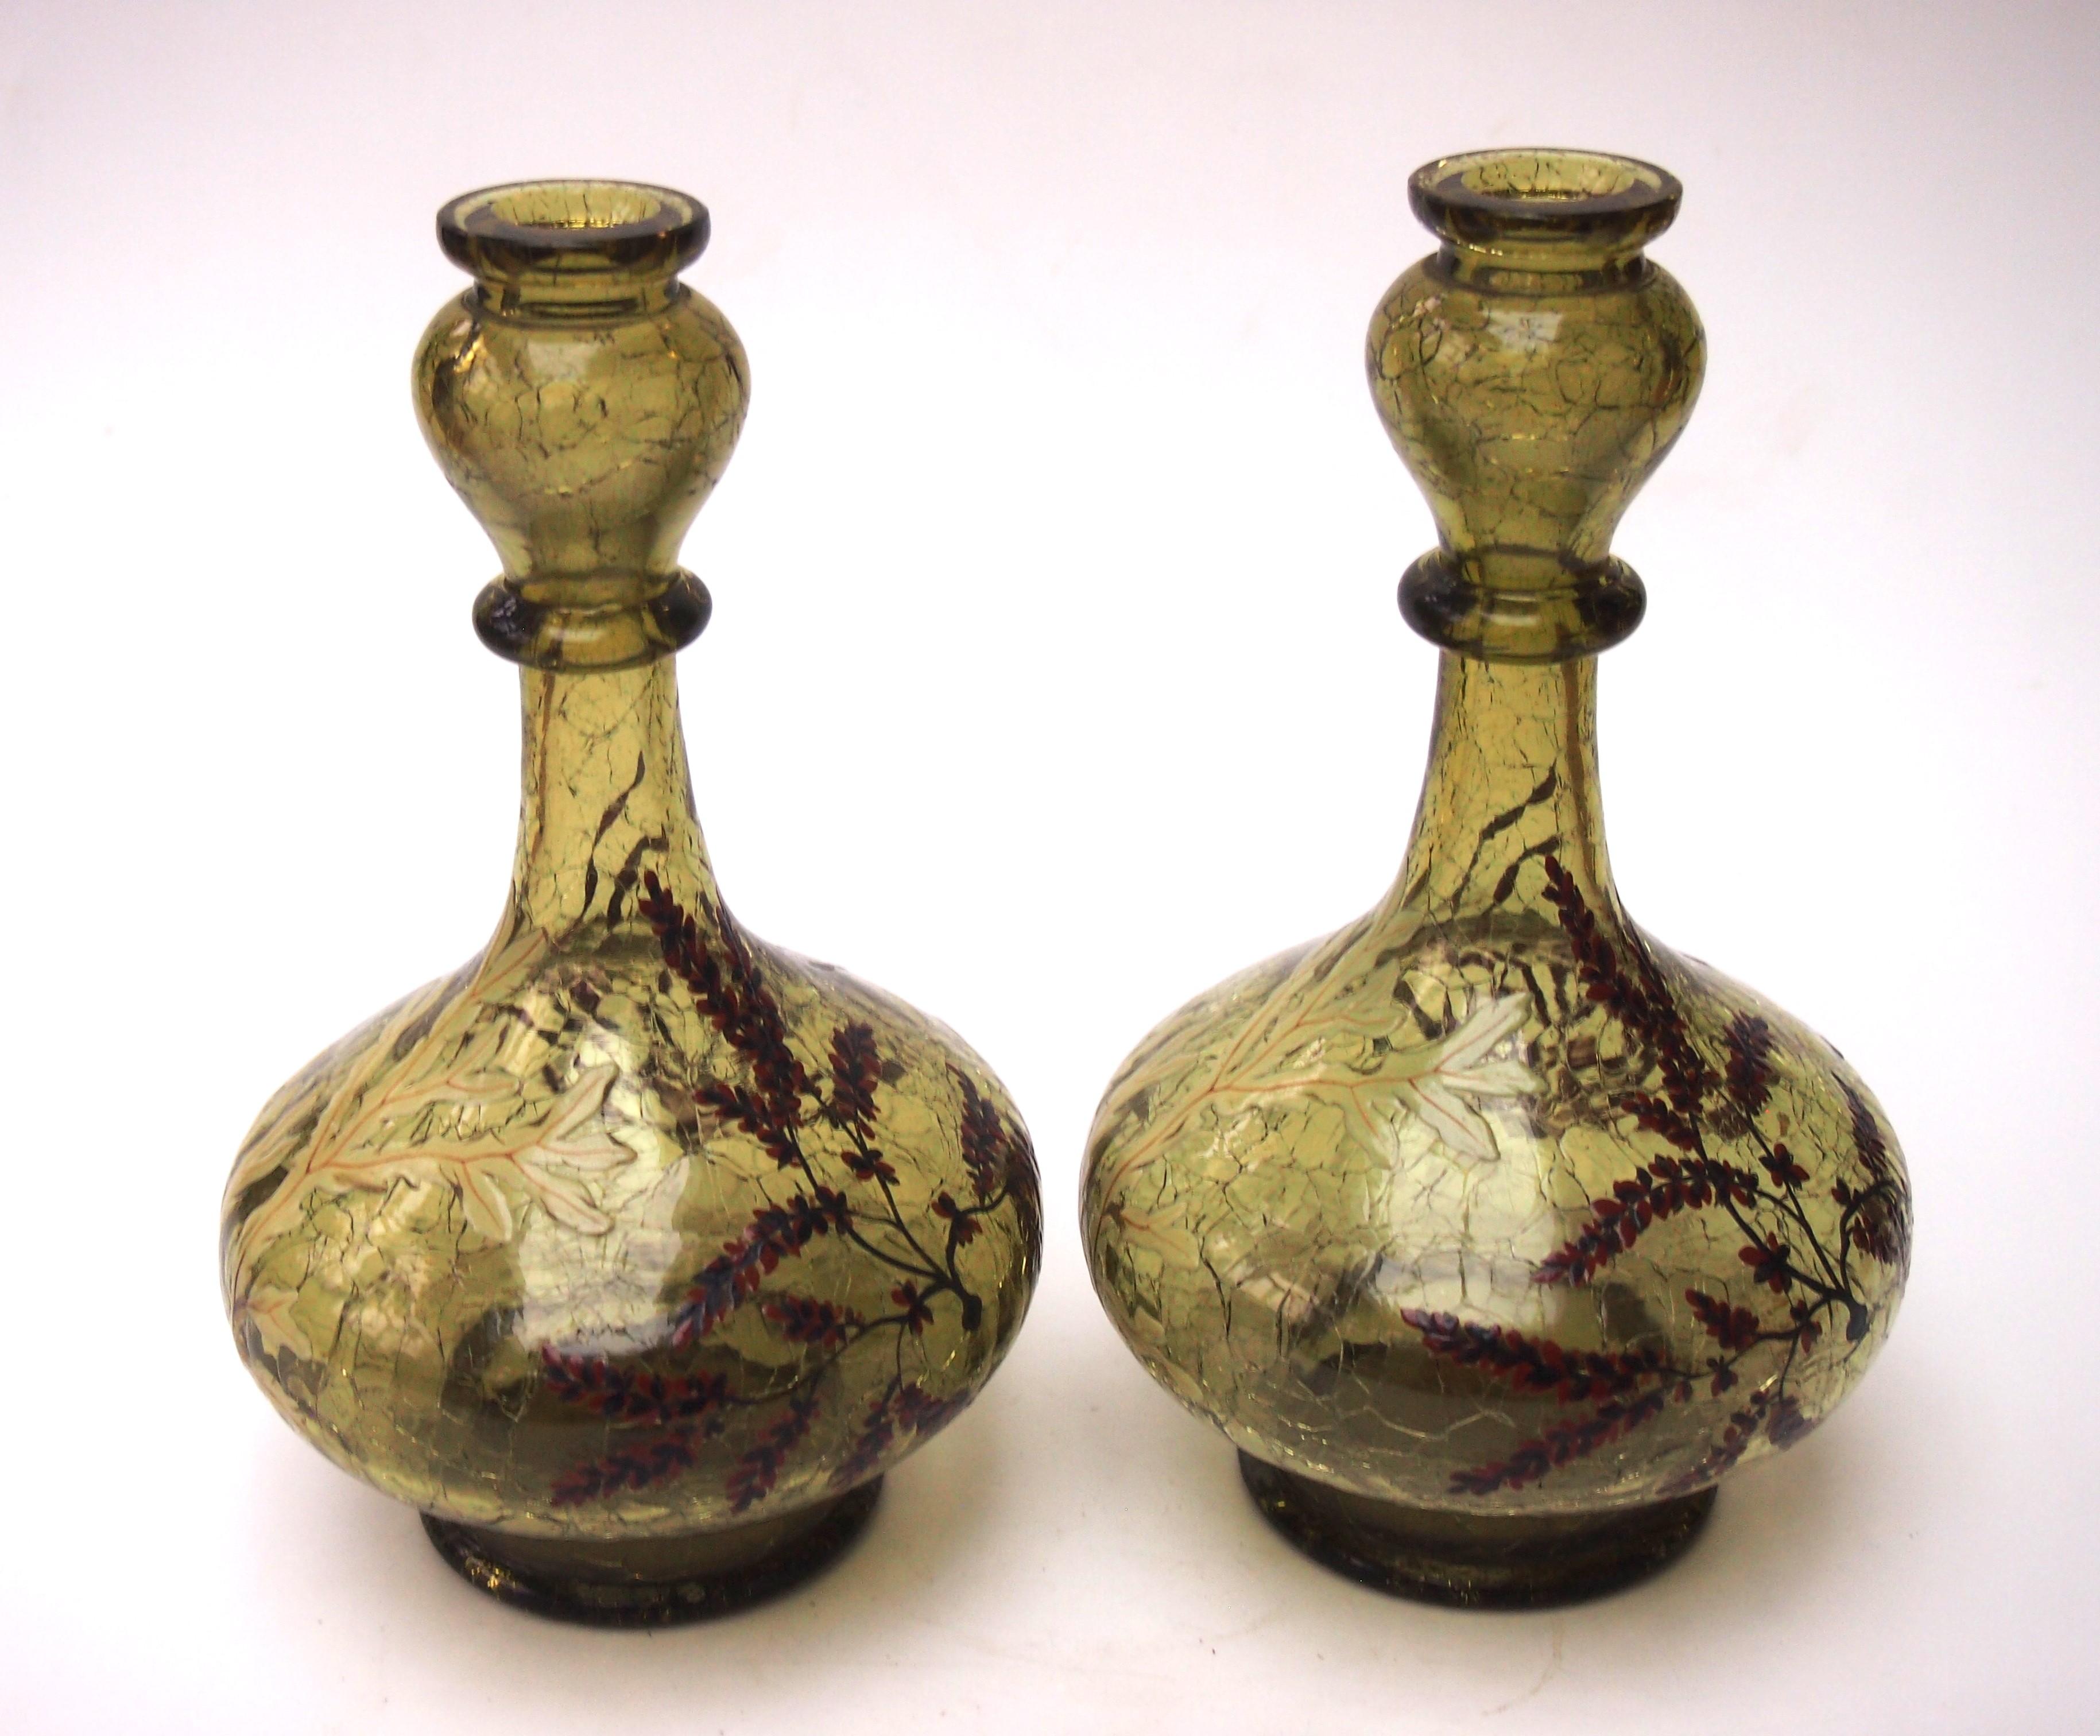 Ikonisches frühes Moser Crackle-Glas-Vasenpaar in tiefem Meeresgrün, stark und fein emailliert mit einer klassischen Wasserszene mit verschiedenen Arten von Algen, meist in Violett und Hellgrün. Die Vasen sind mundgeblasen und haben einen